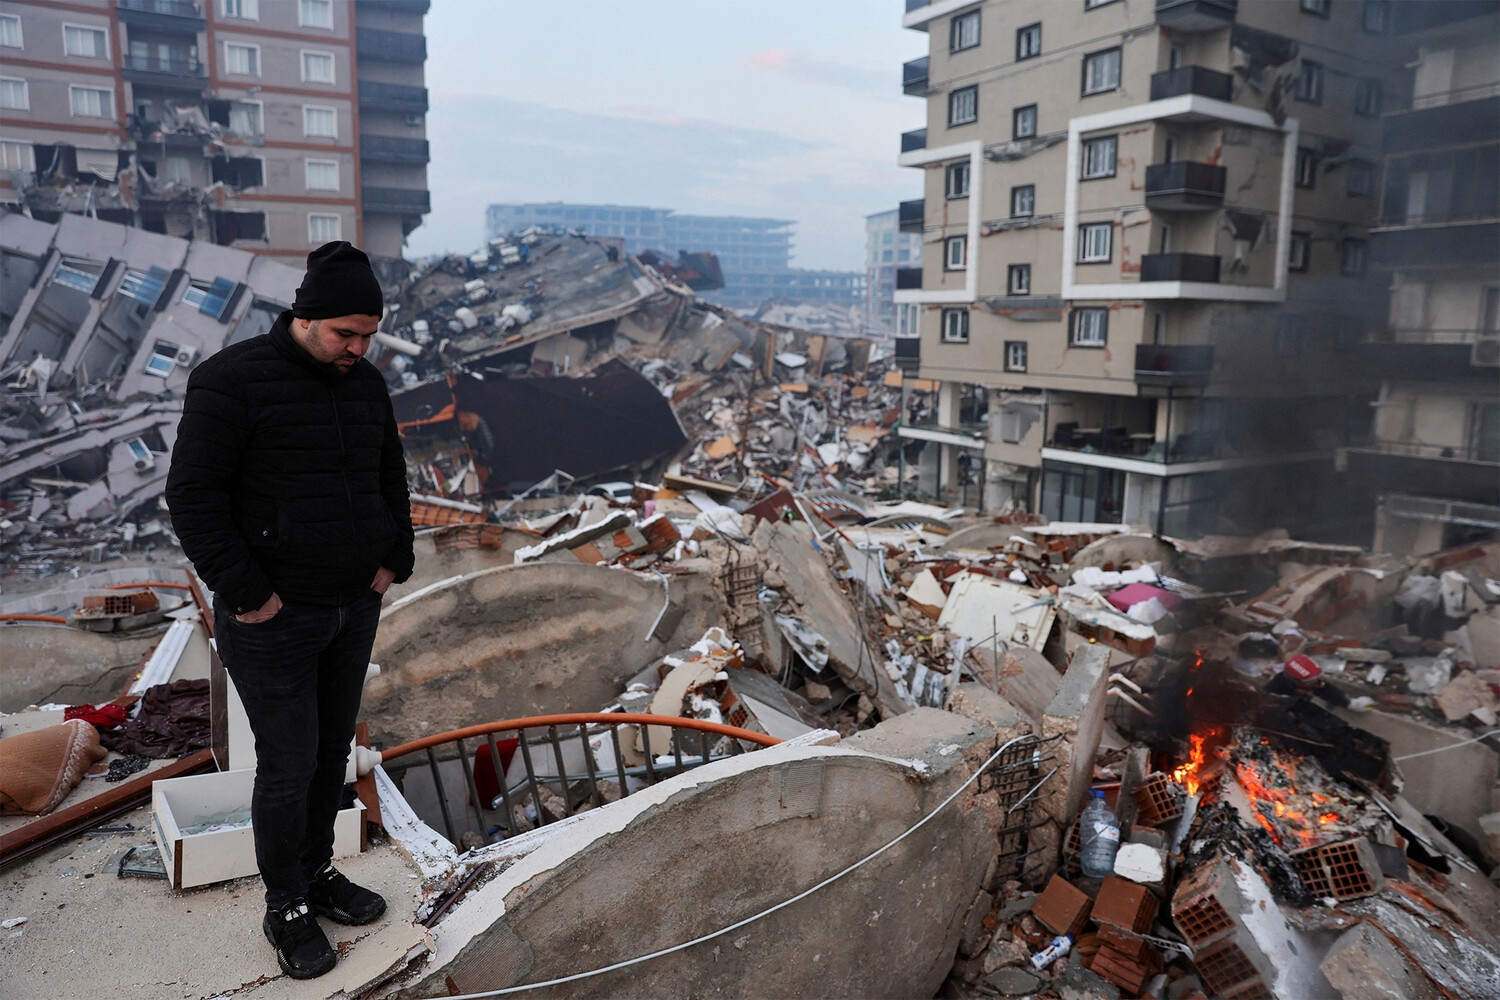 Число погибших при землетрясении в Турции выросло до 3419